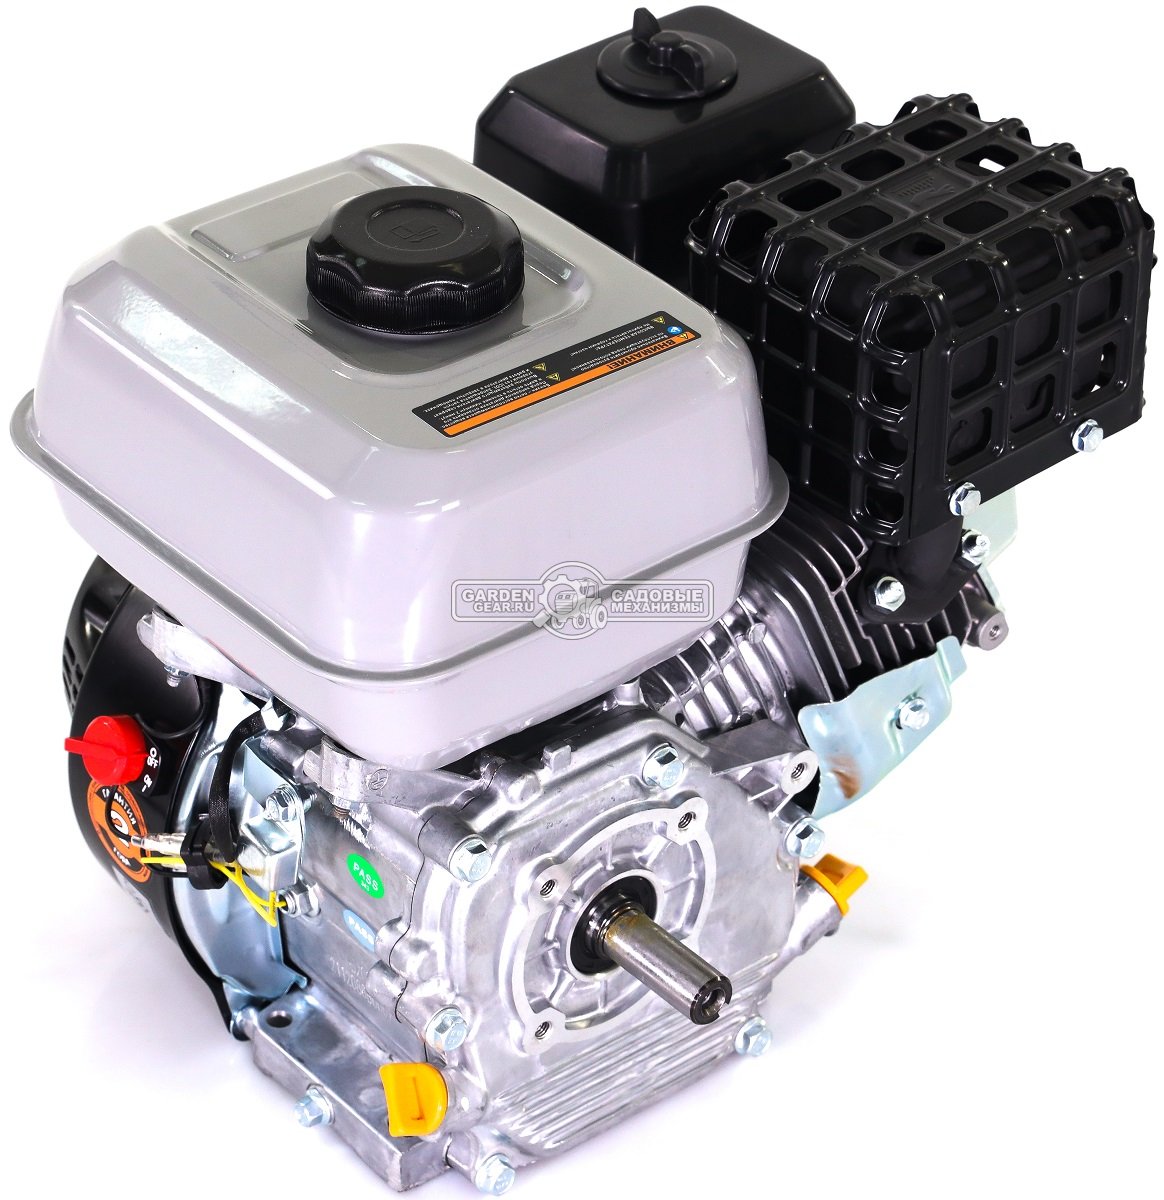 Бензиновый двигатель Zongshen GB200S (PRC, 6,5 л.с., 196 см3, D=20 мм L= 53 мм, вал - цилиндр, 15,5 кг.)